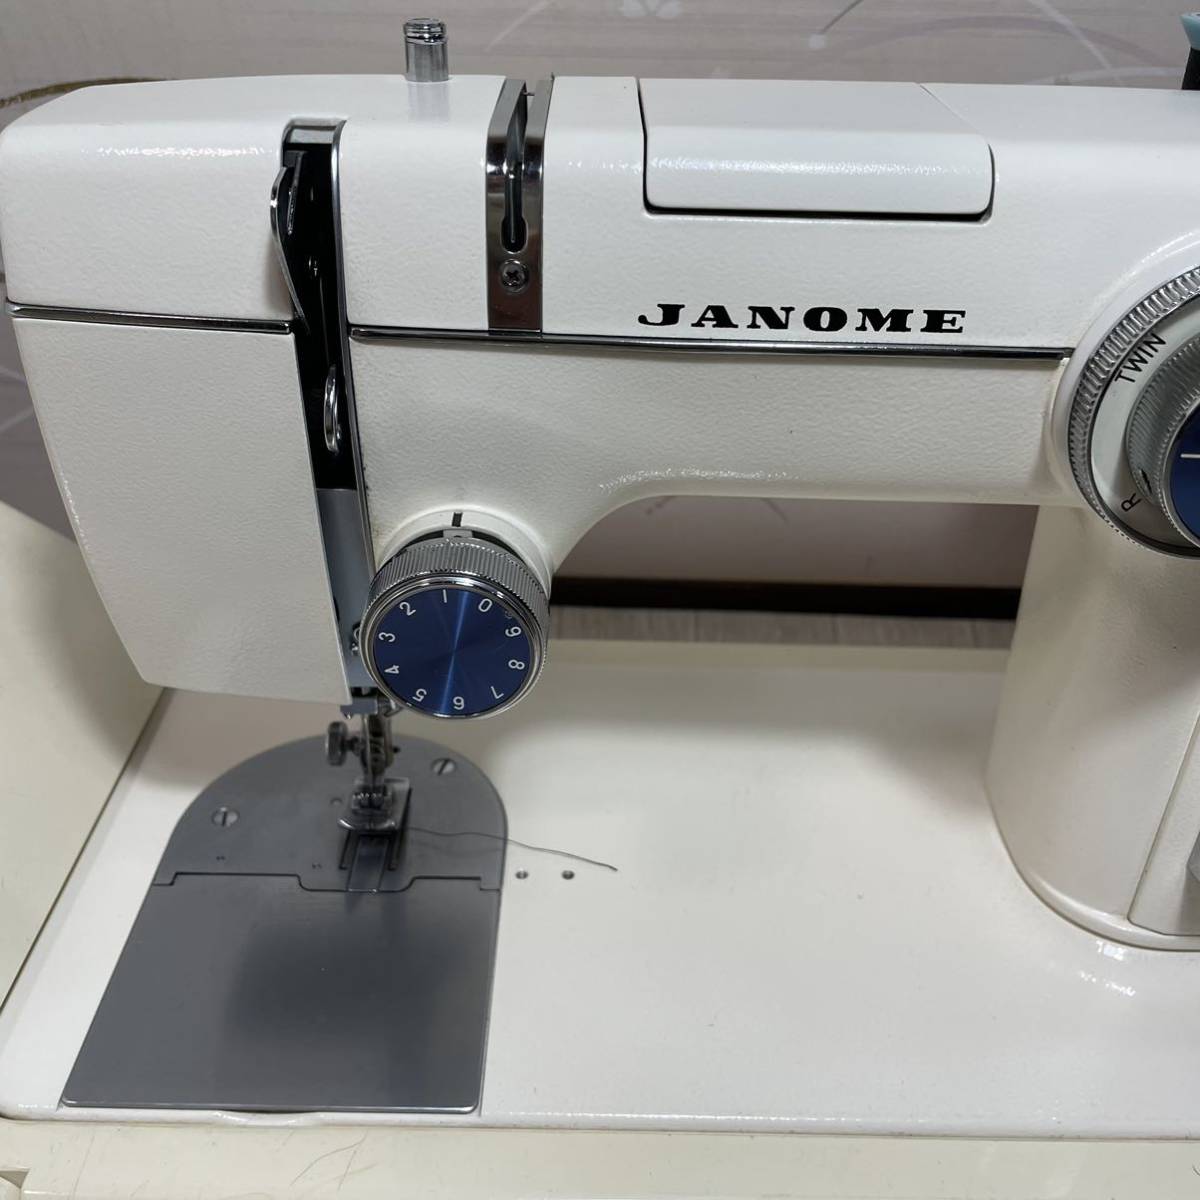 JANOME ジャノメ ミシン MODEL 804 裁縫 手芸/フットペダル付/通電・針動作OK _画像3